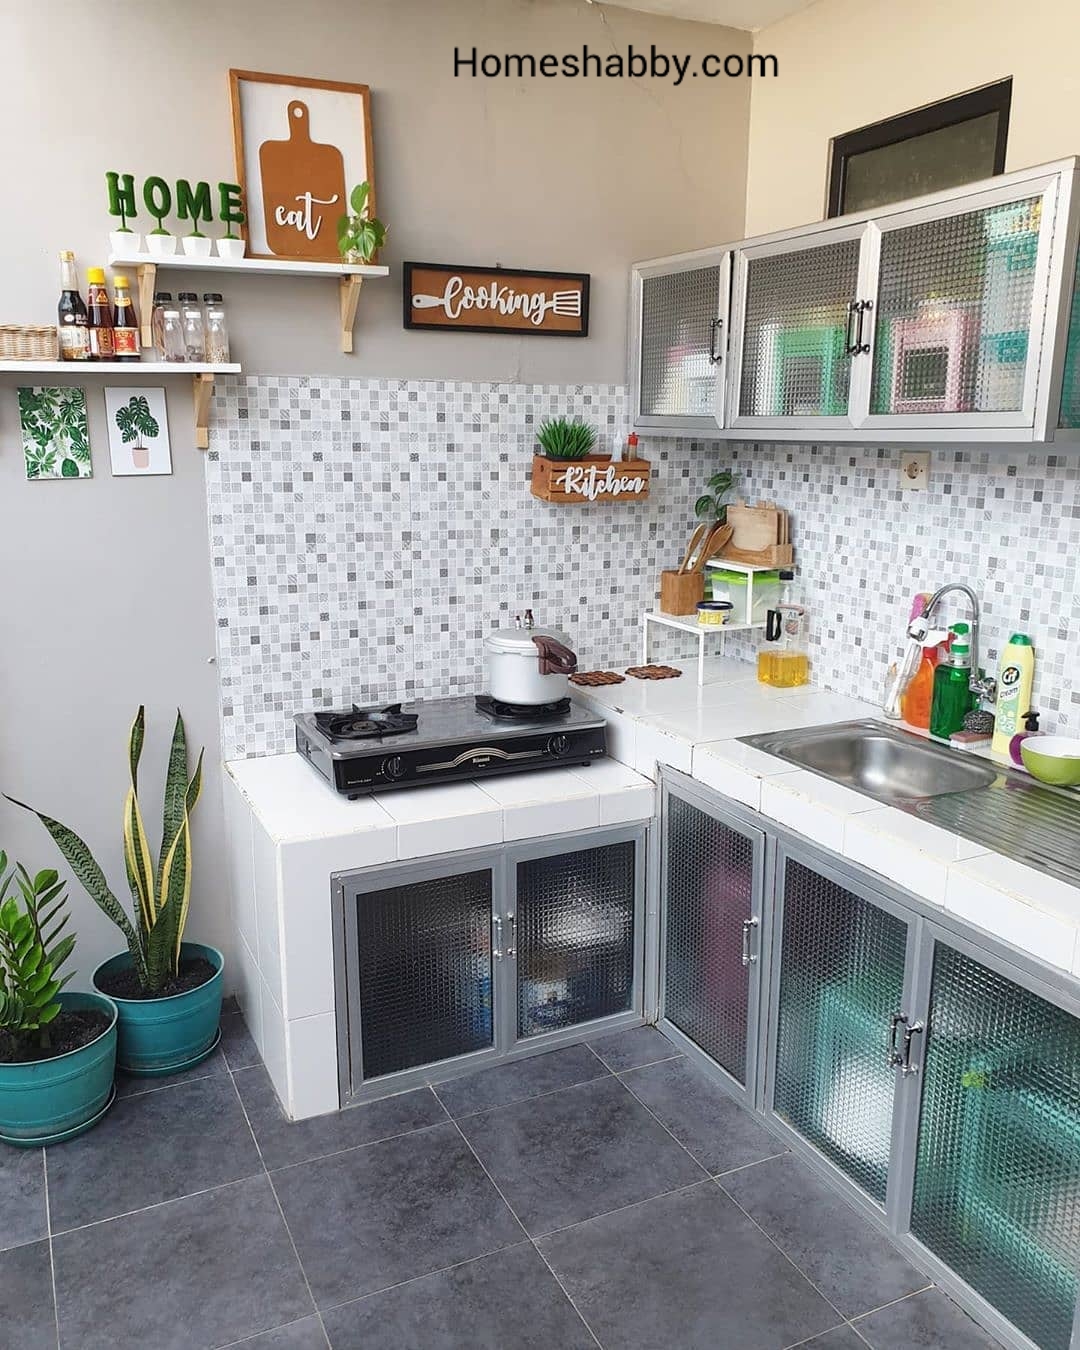 6 Contoh Desain Dapur Rumah Minimalis Type 36 Terbaru Homeshabbycom Design Home Plans